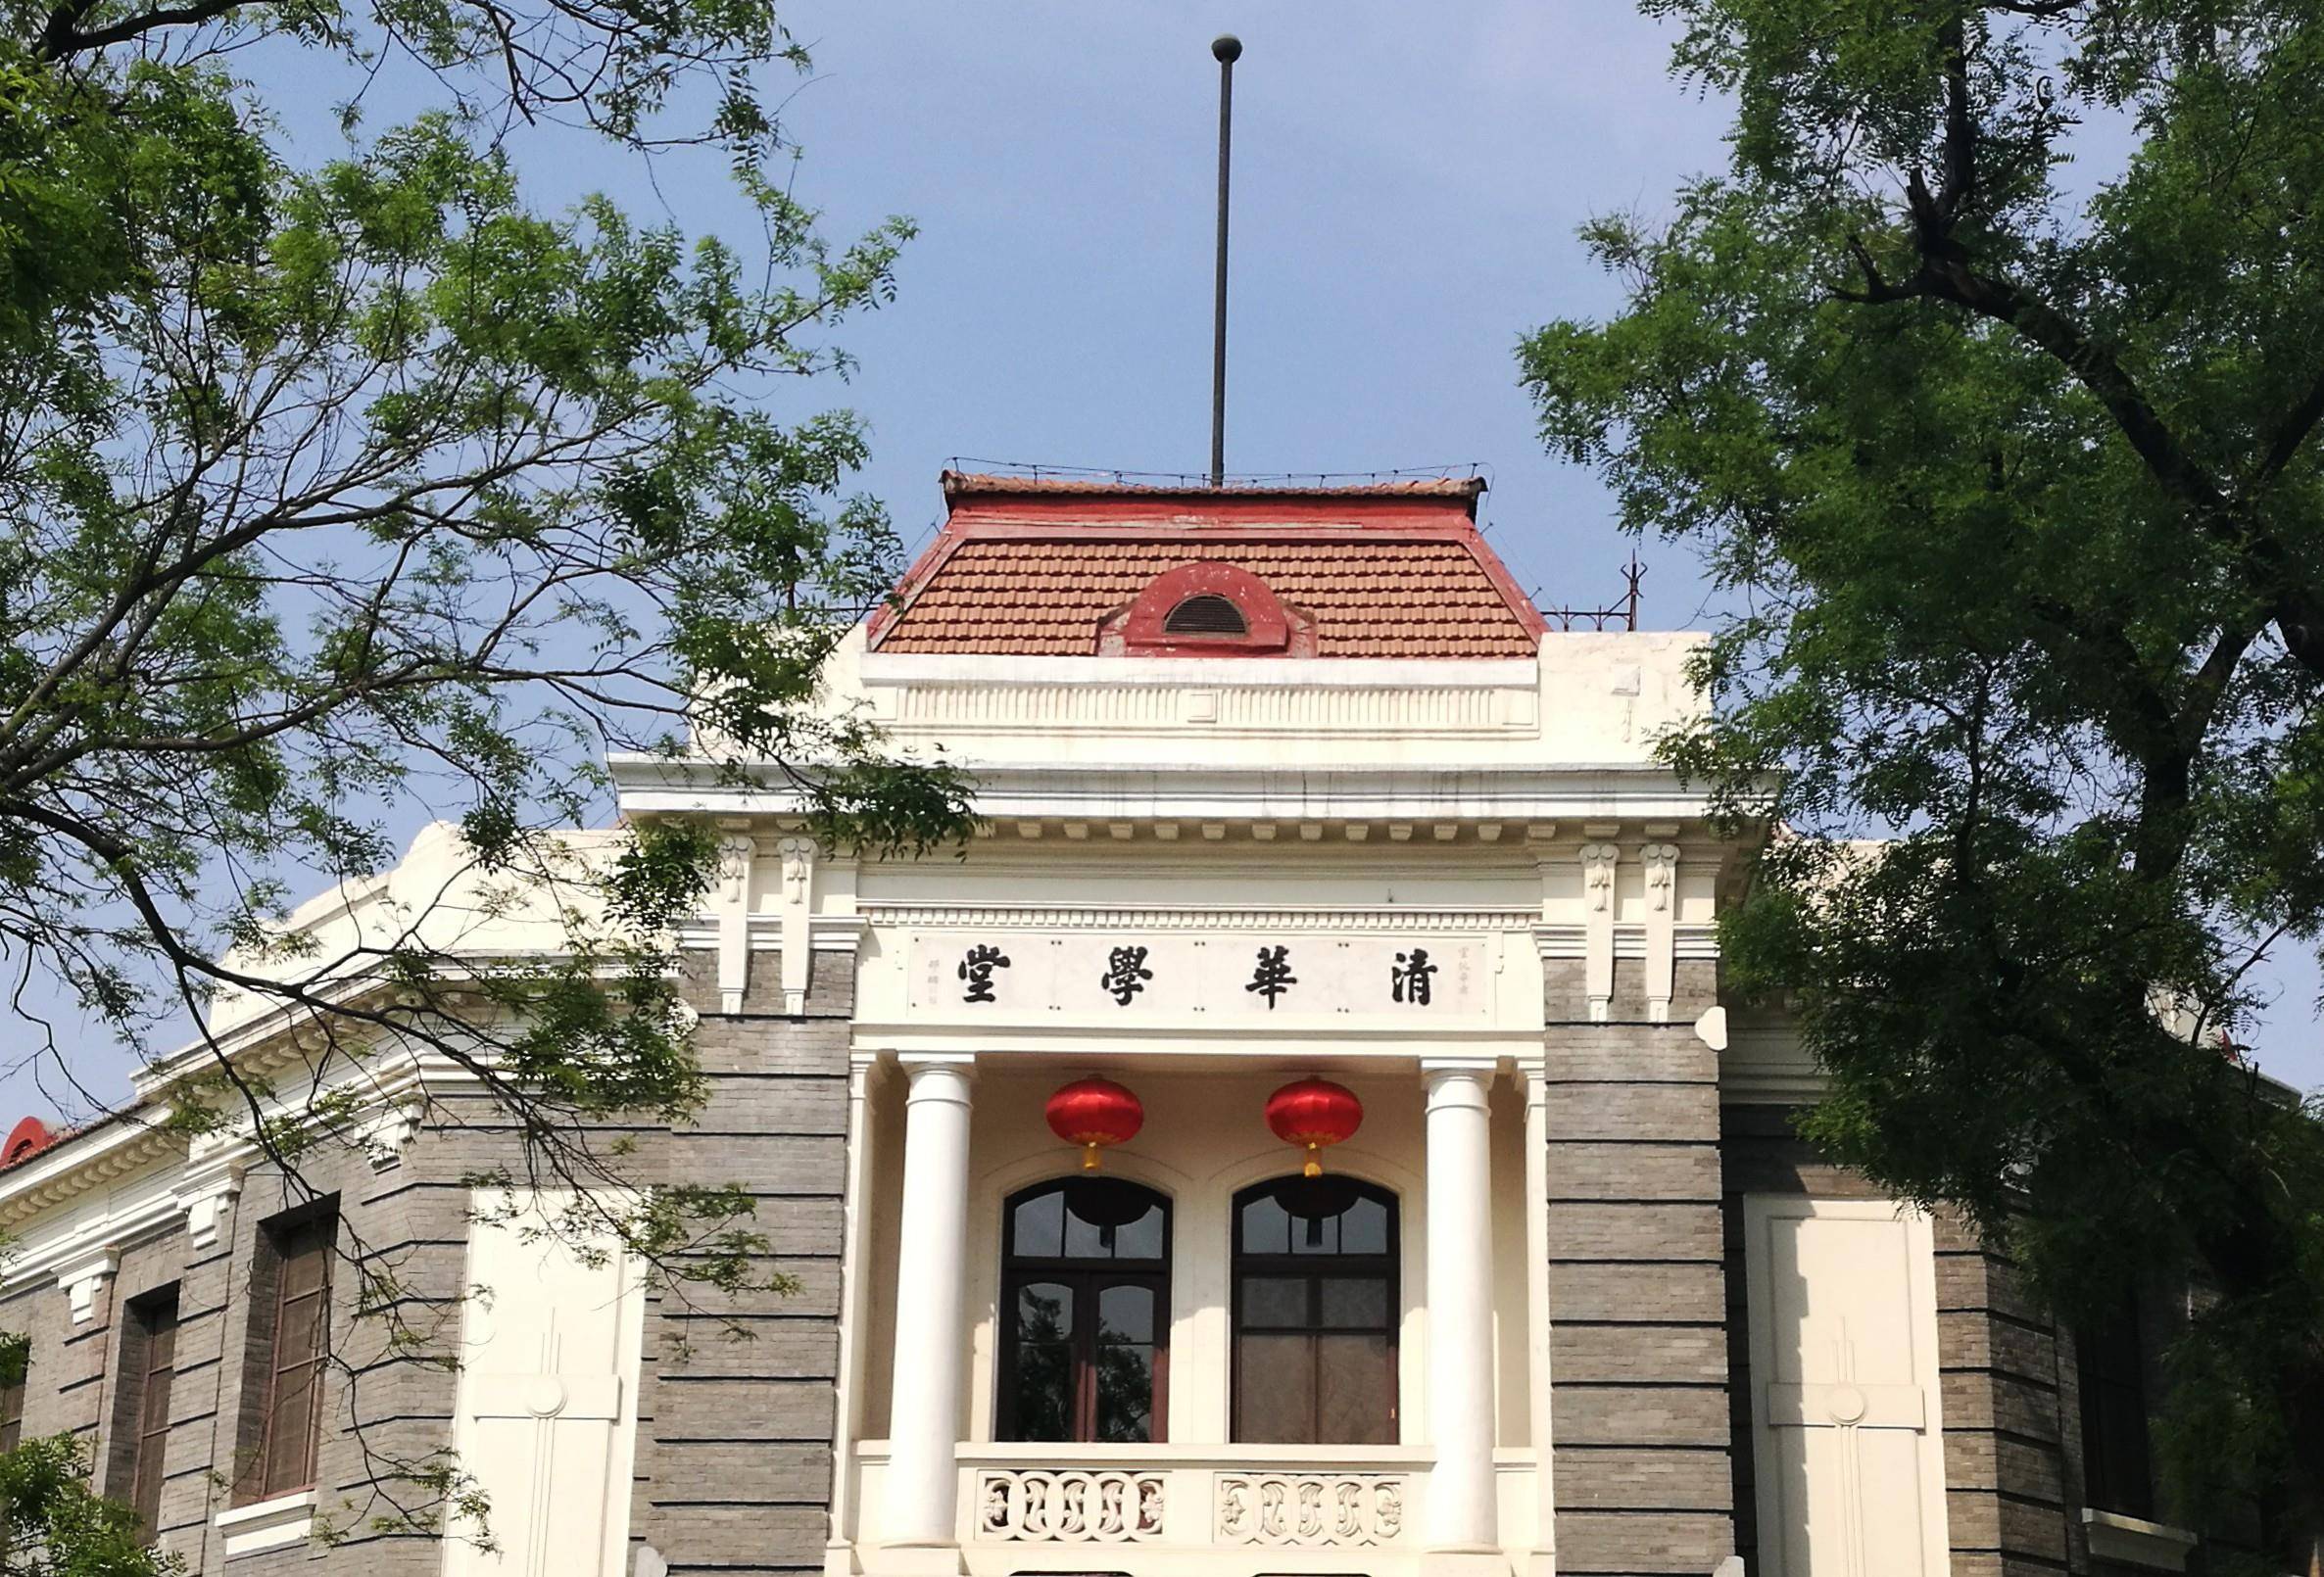 清华大学的前身是建于光绪三十四年的清华学堂,最早名为游美学务处